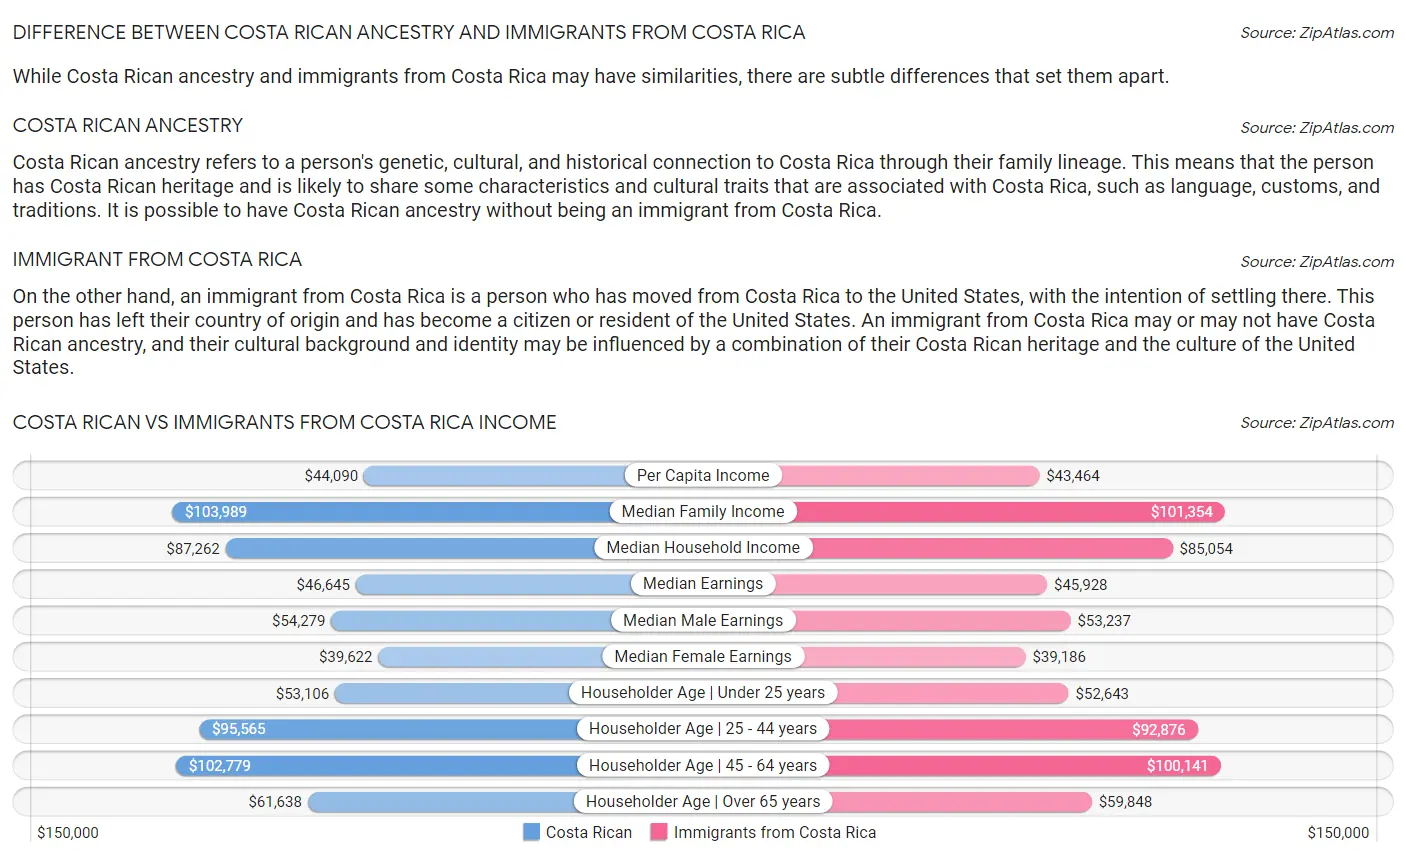 Costa Rican vs Immigrants from Costa Rica Income